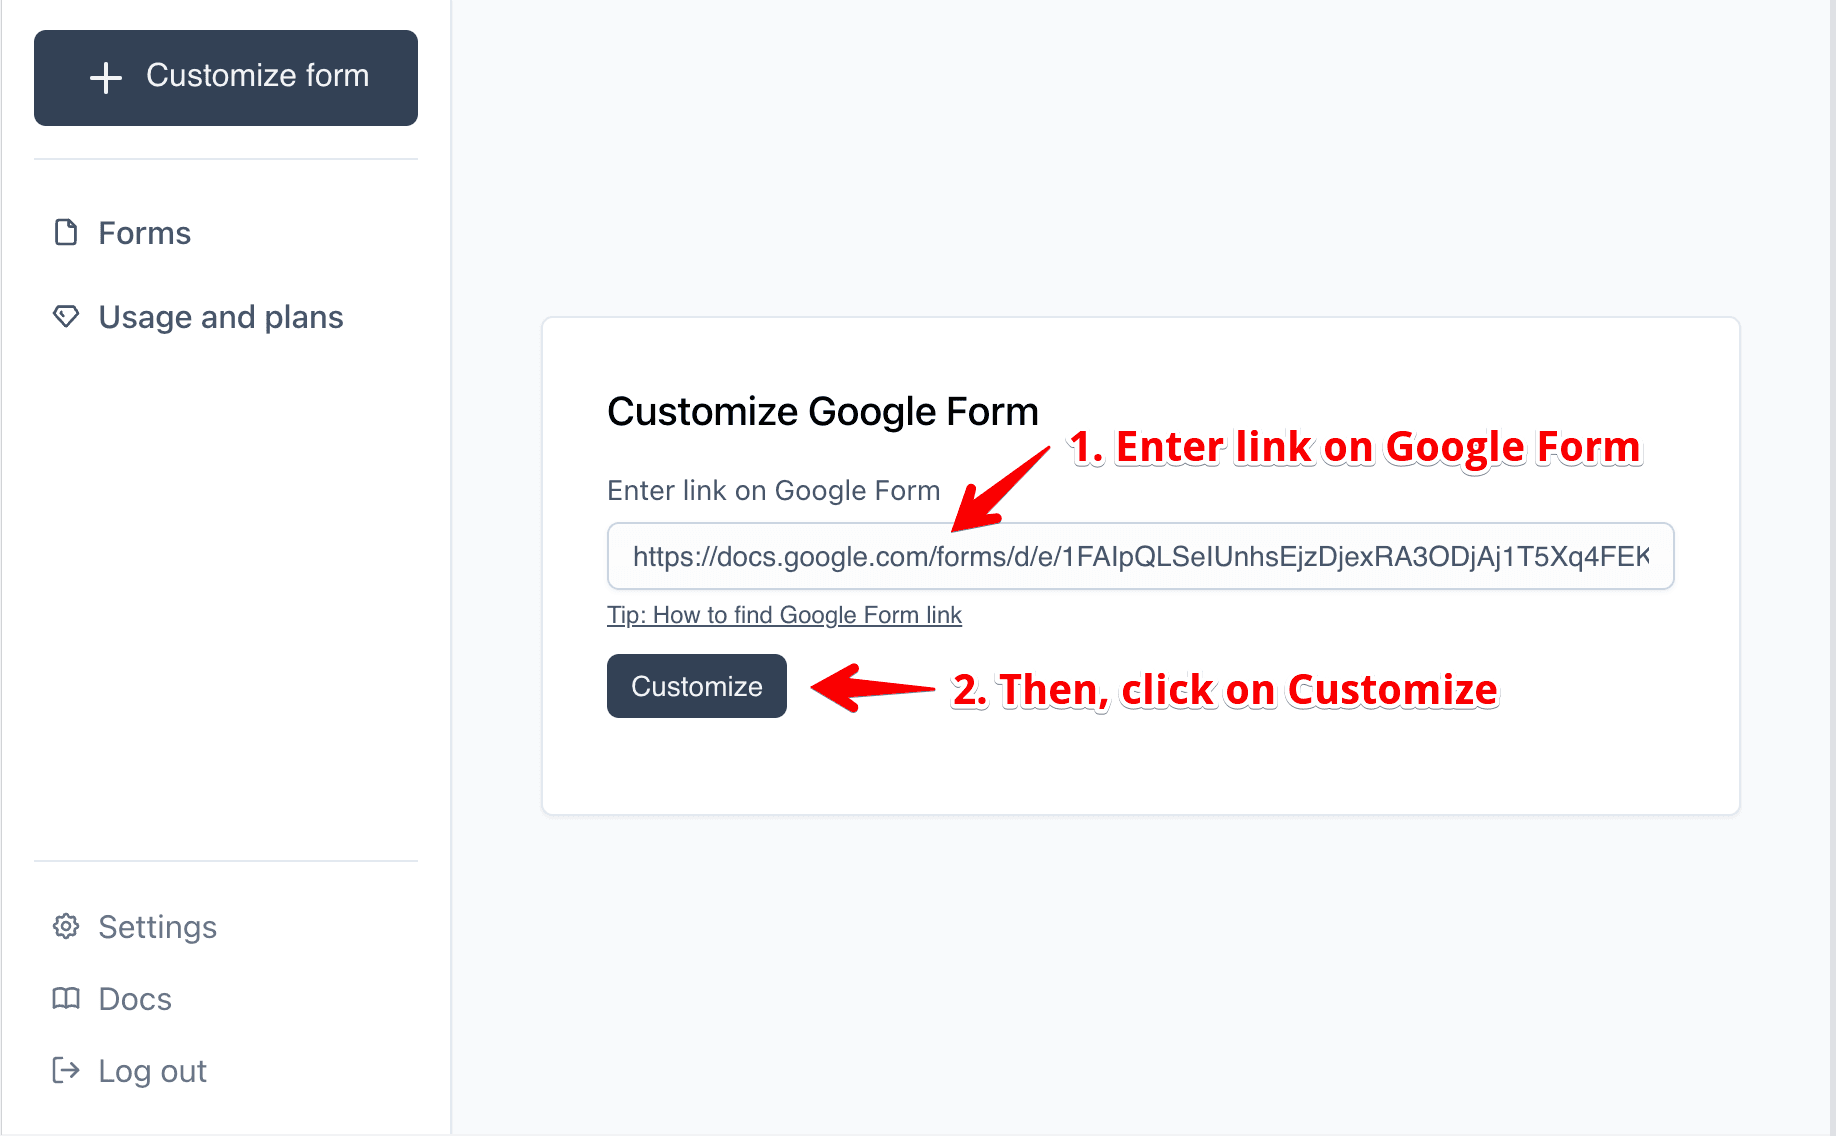 Enter link on Google Form